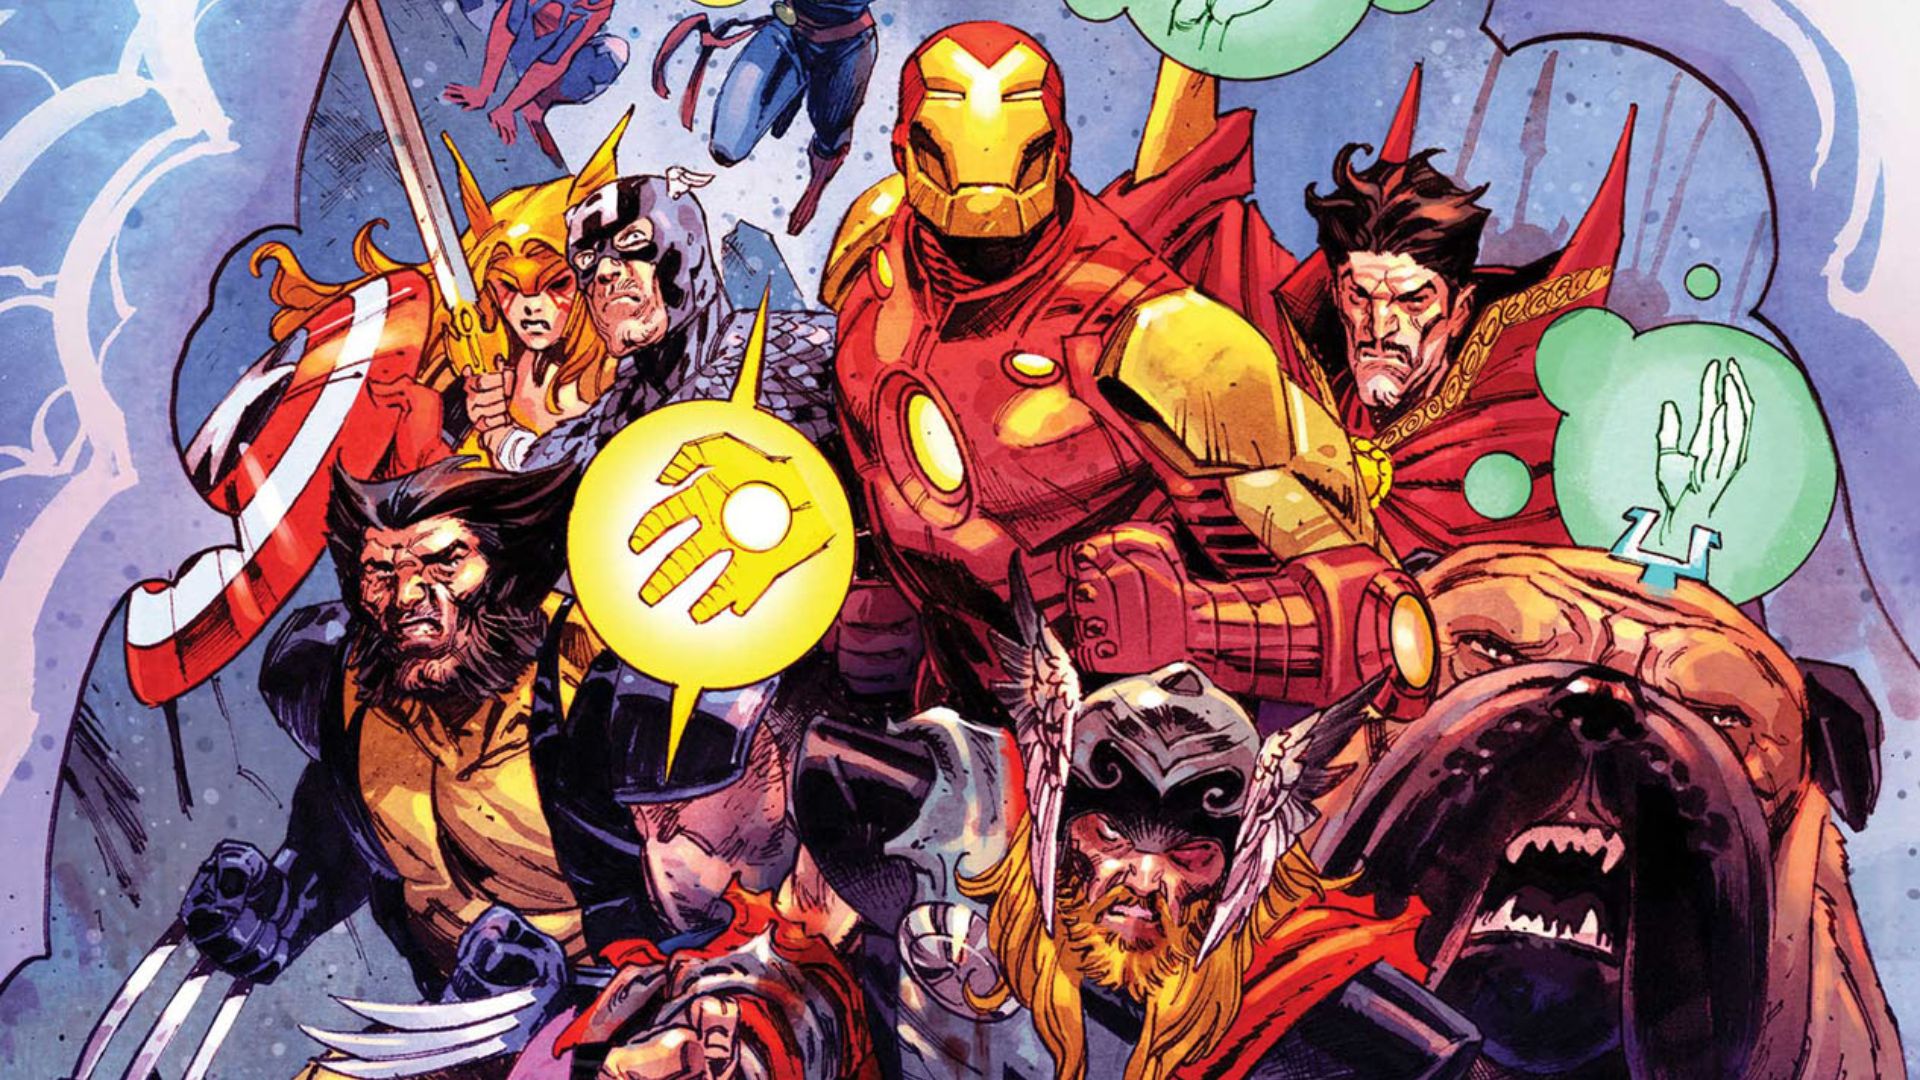 Avengers #28 Captain America Captain Marvel Team Up Variant